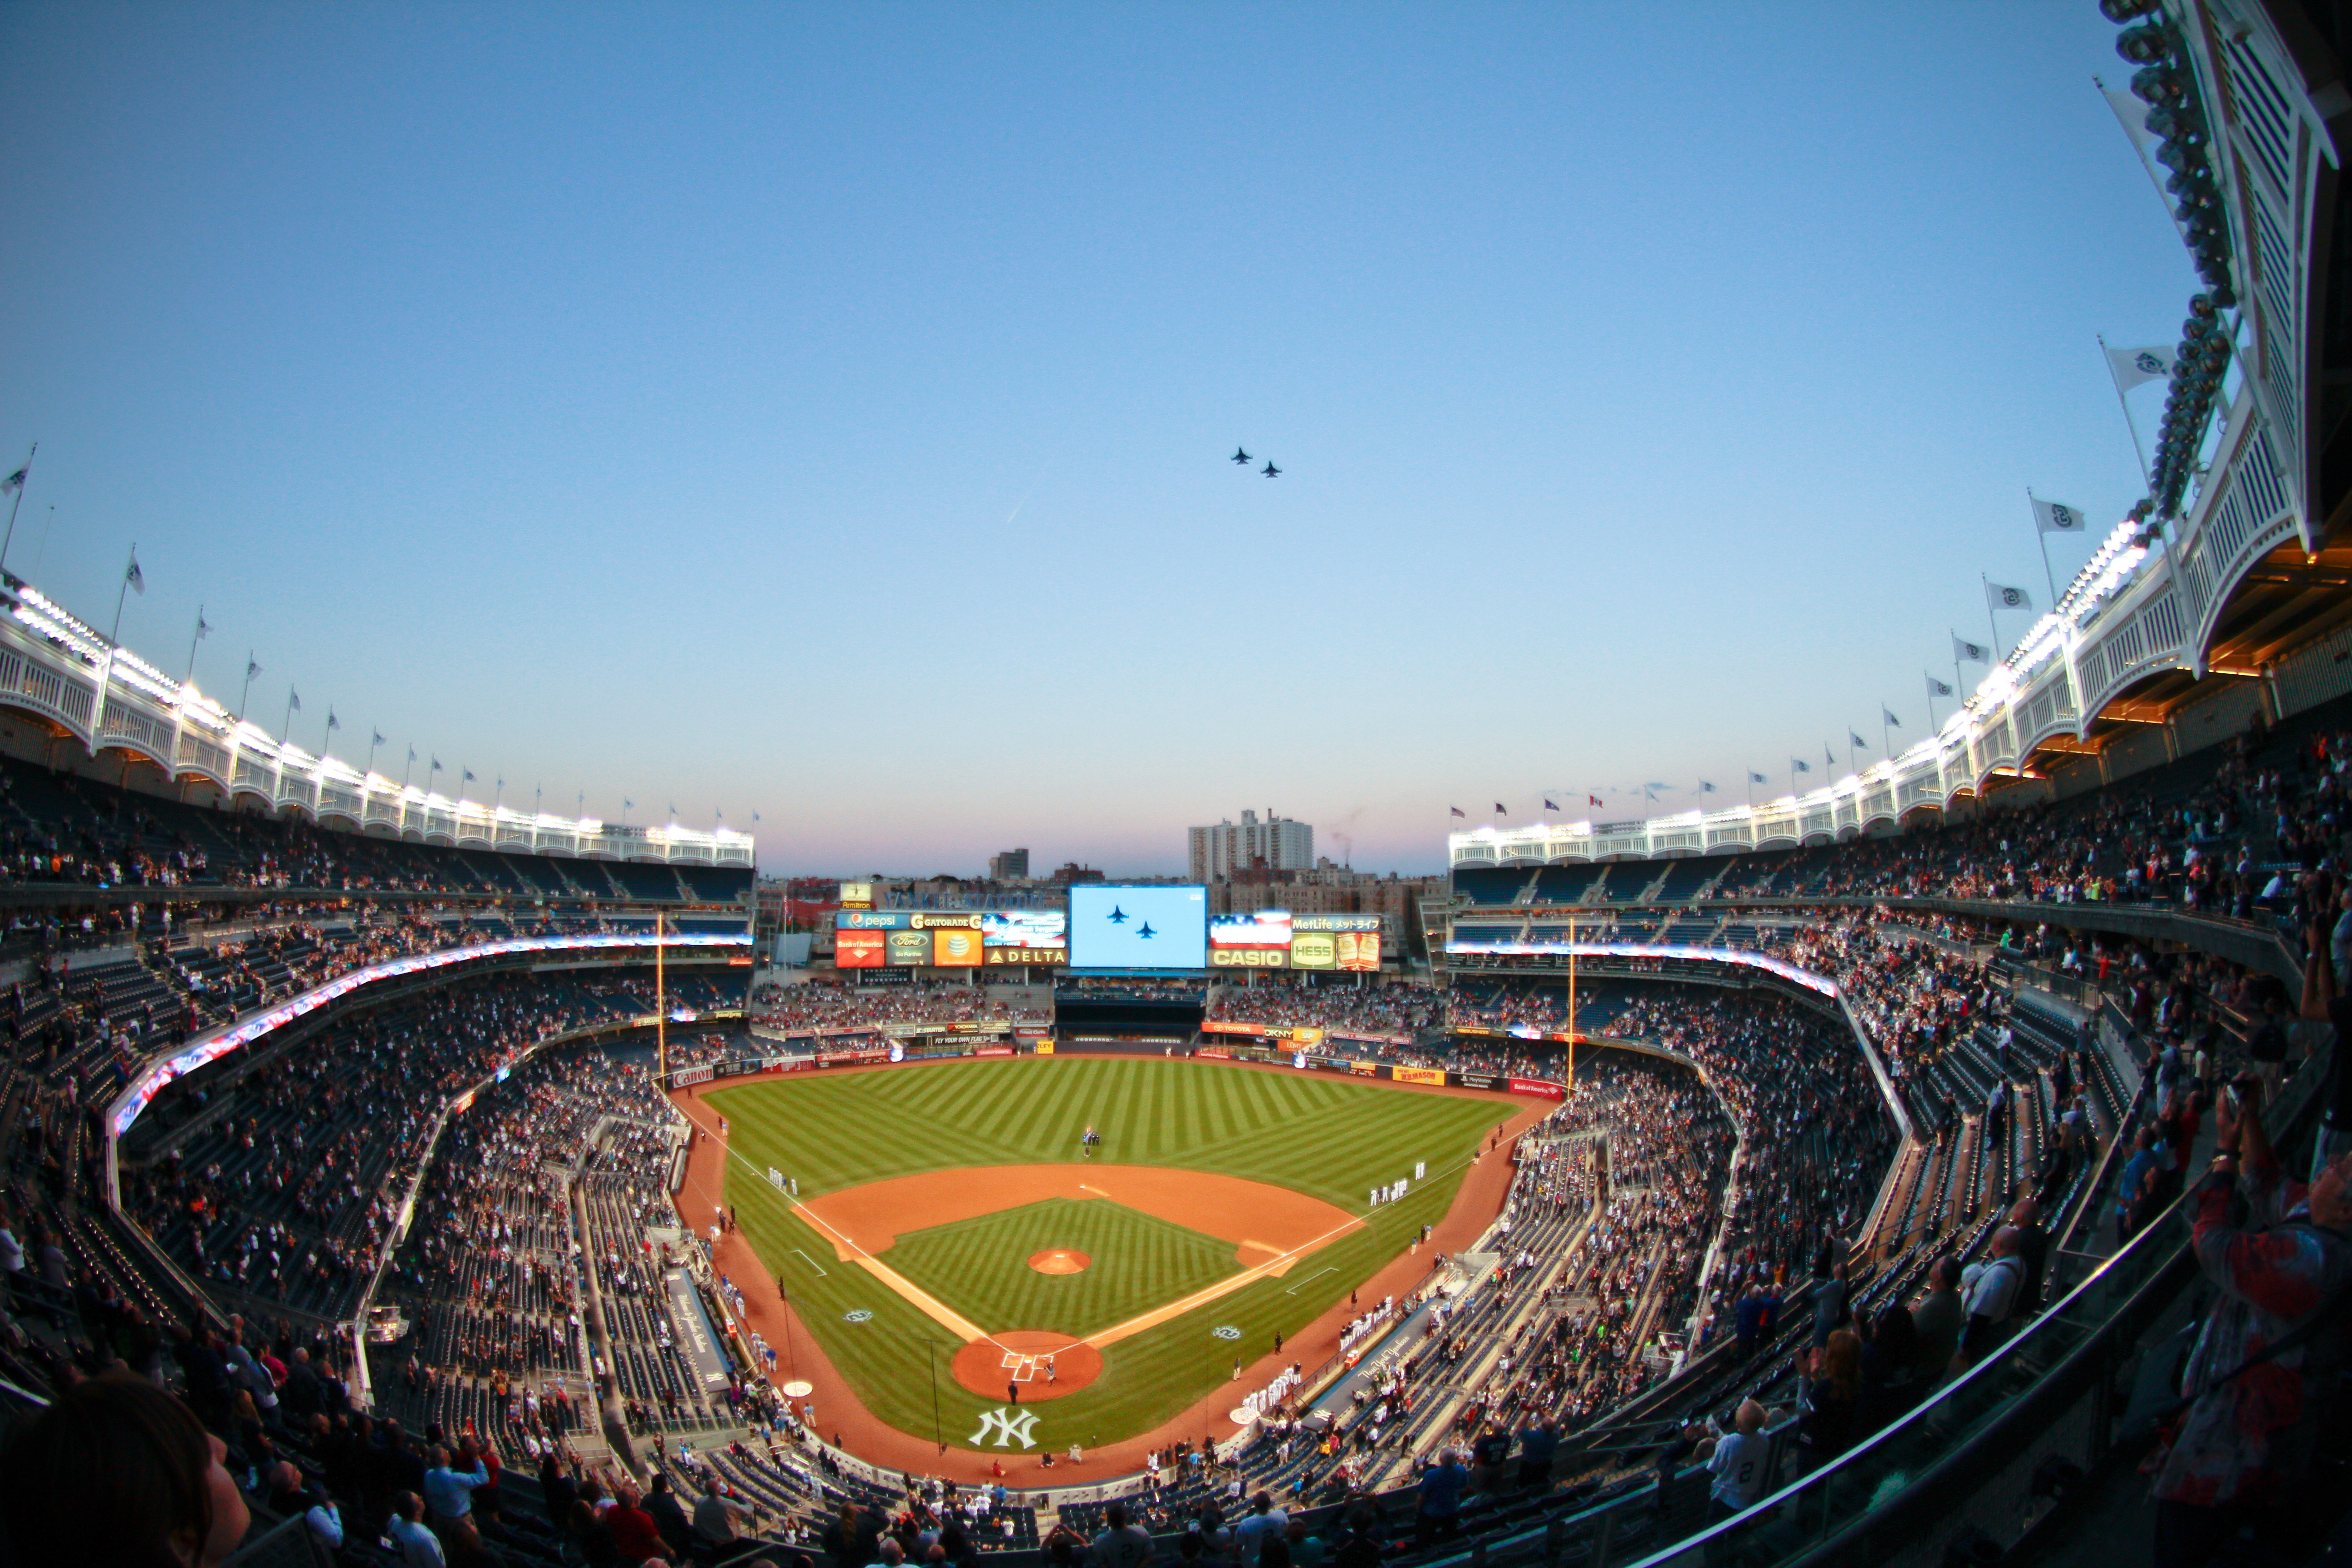 Aerial photo of Yankee Stadium image - Free stock photo - Public